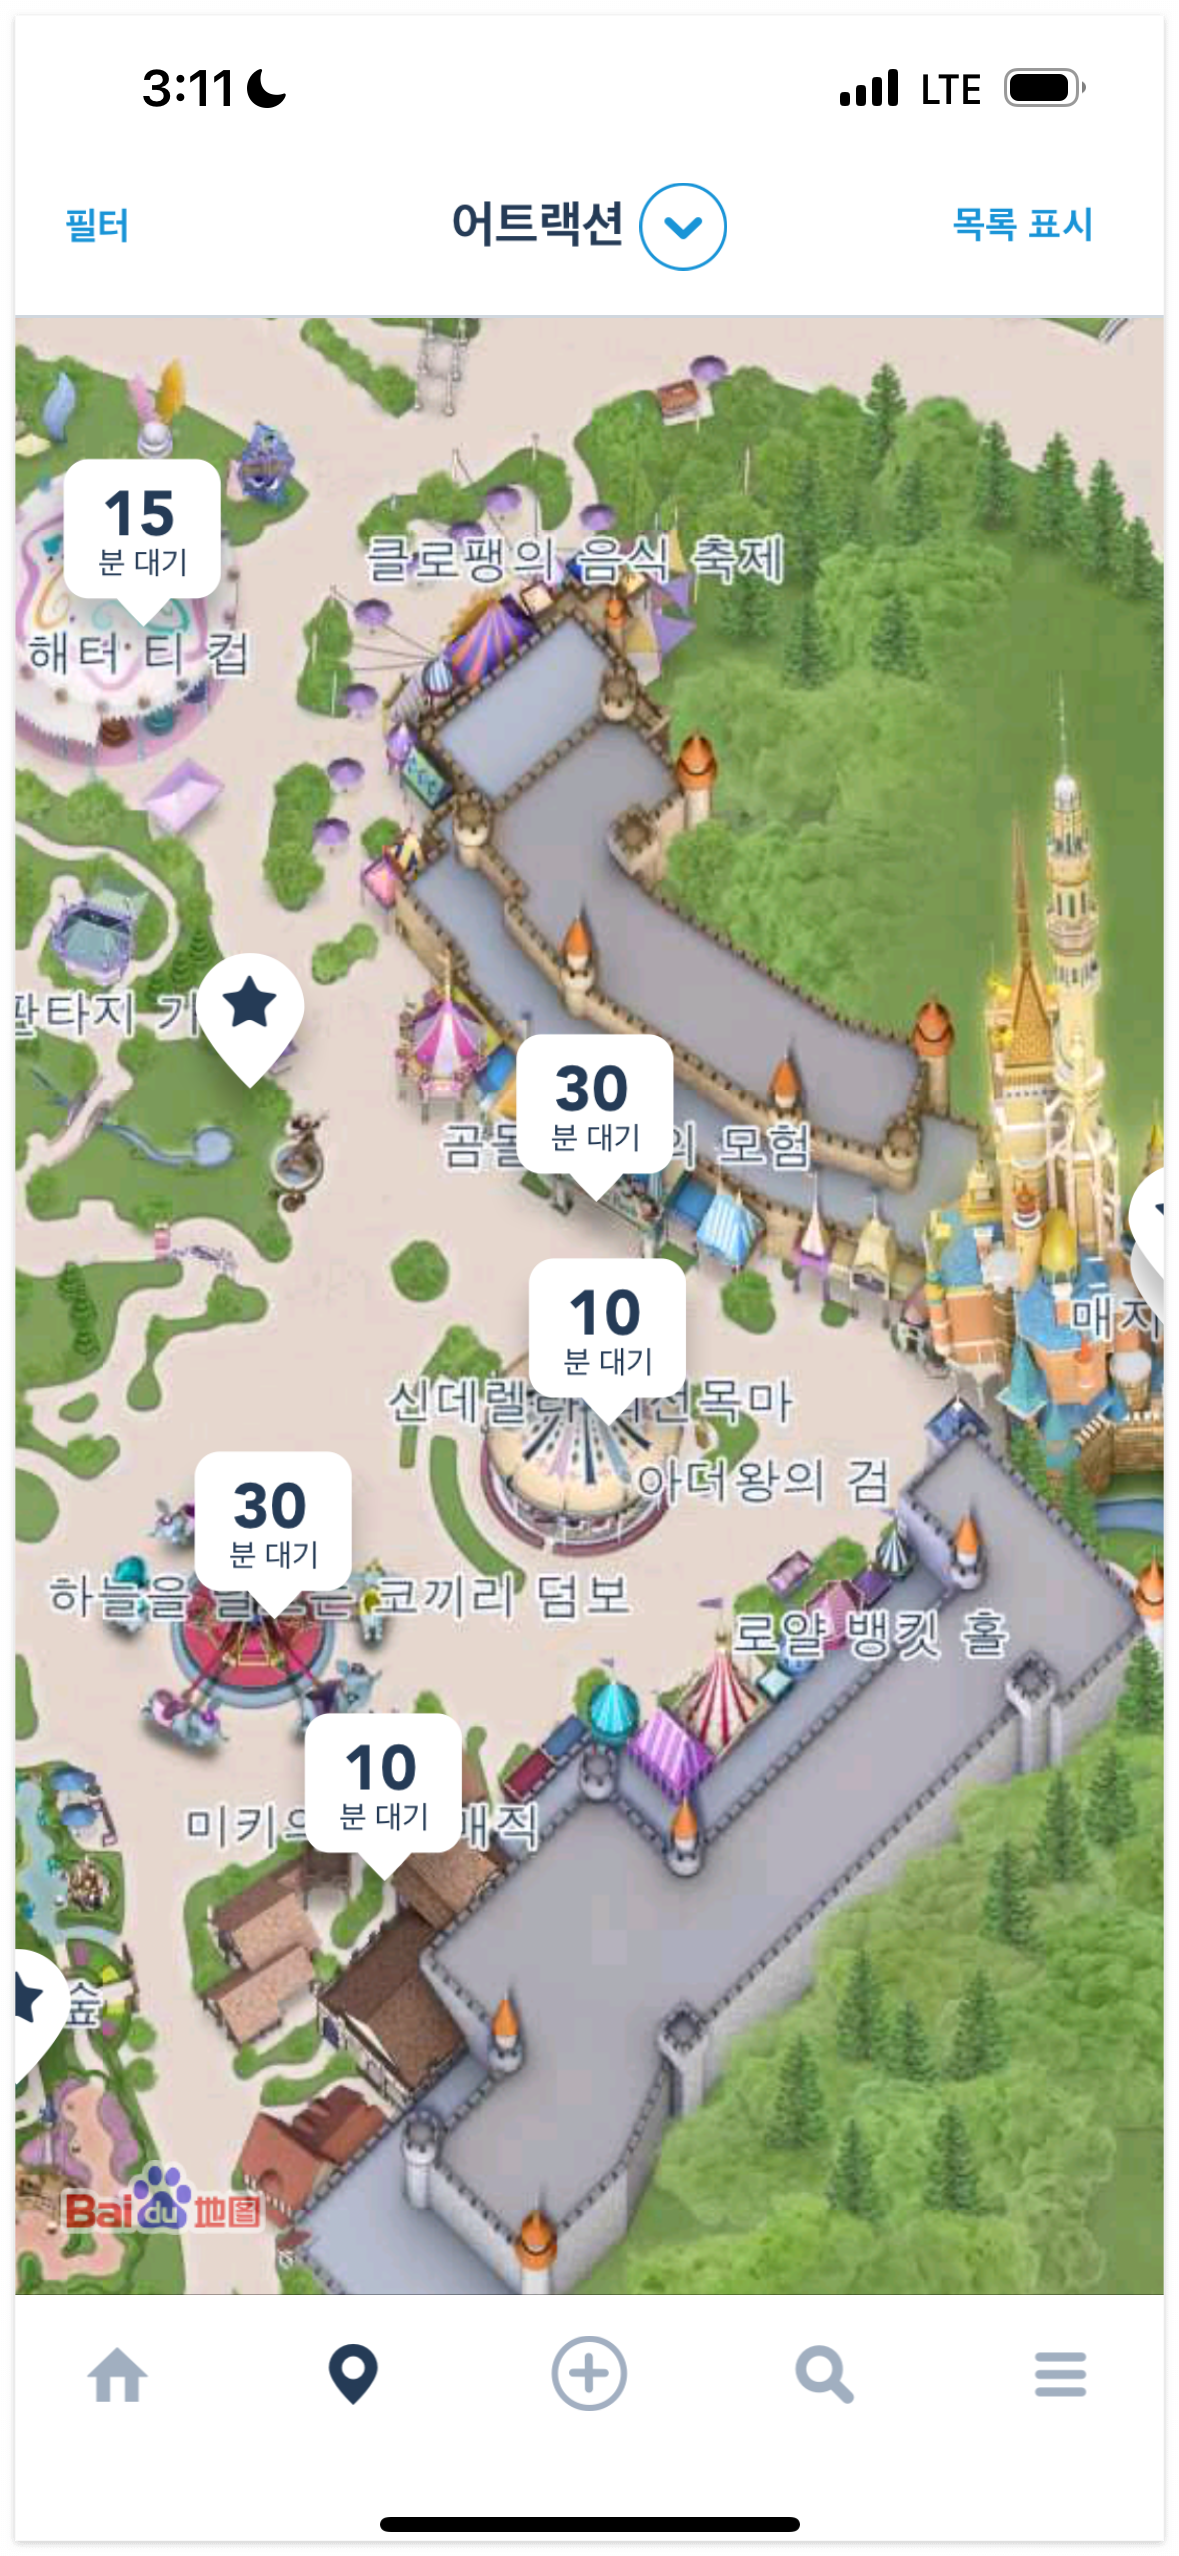 홍콩 디즈니랜드 입장료 티켓 예매